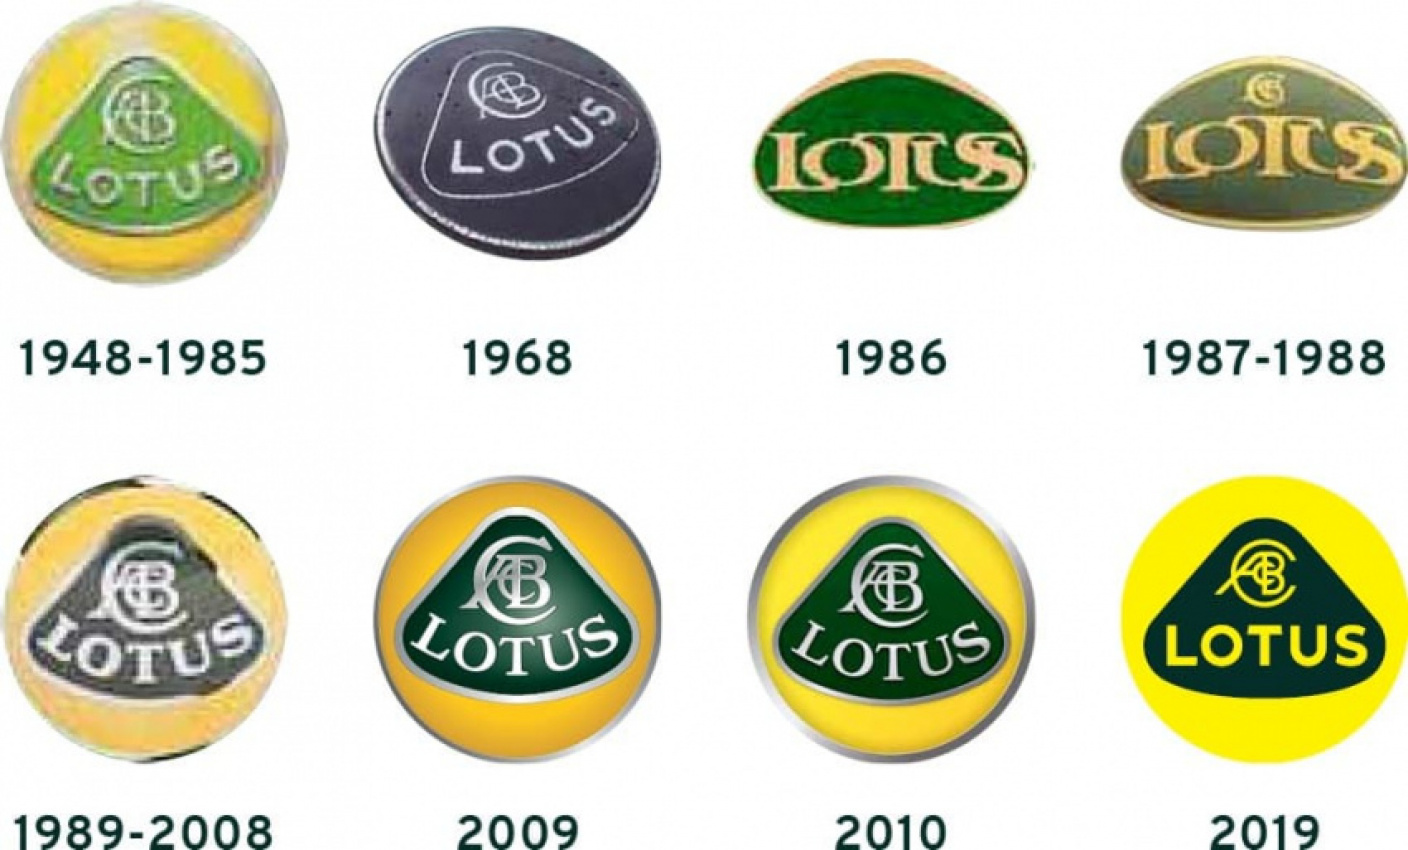 autos, cars, lotus, lotus rebrands with simplified logo